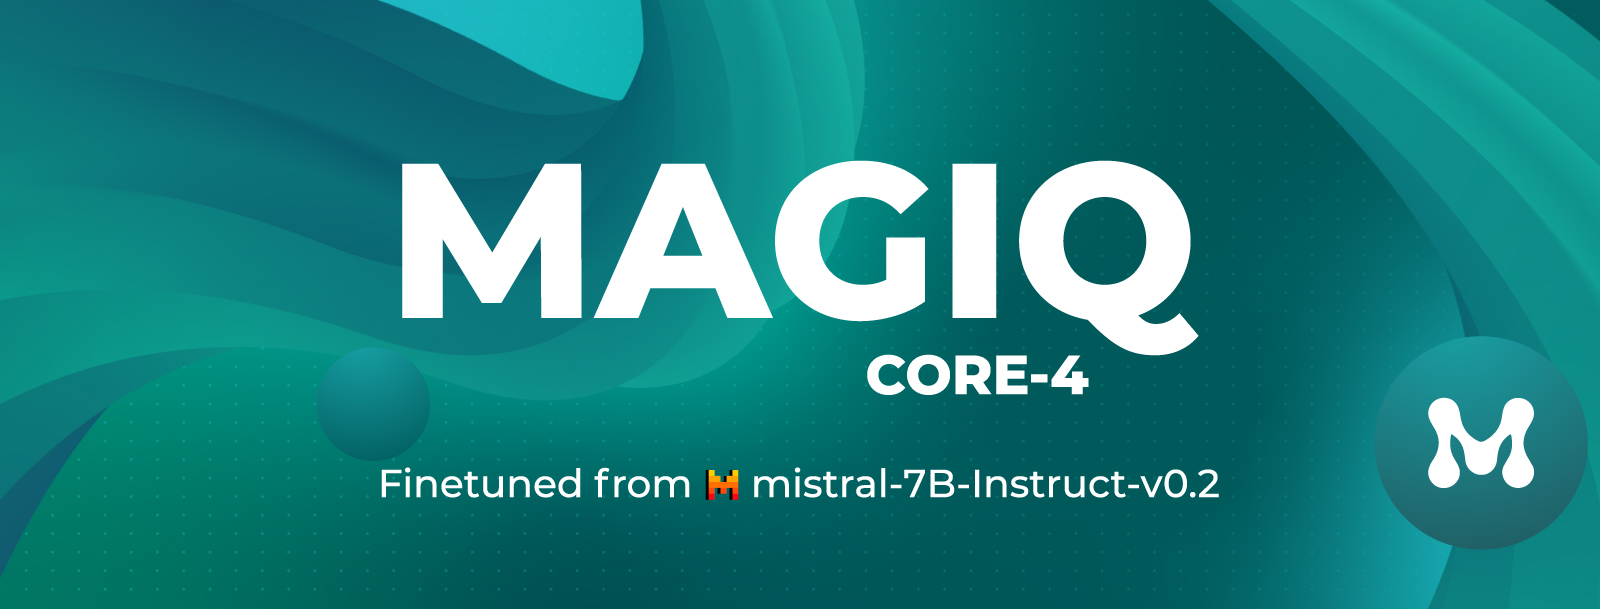 Magiq Core 4 Logo